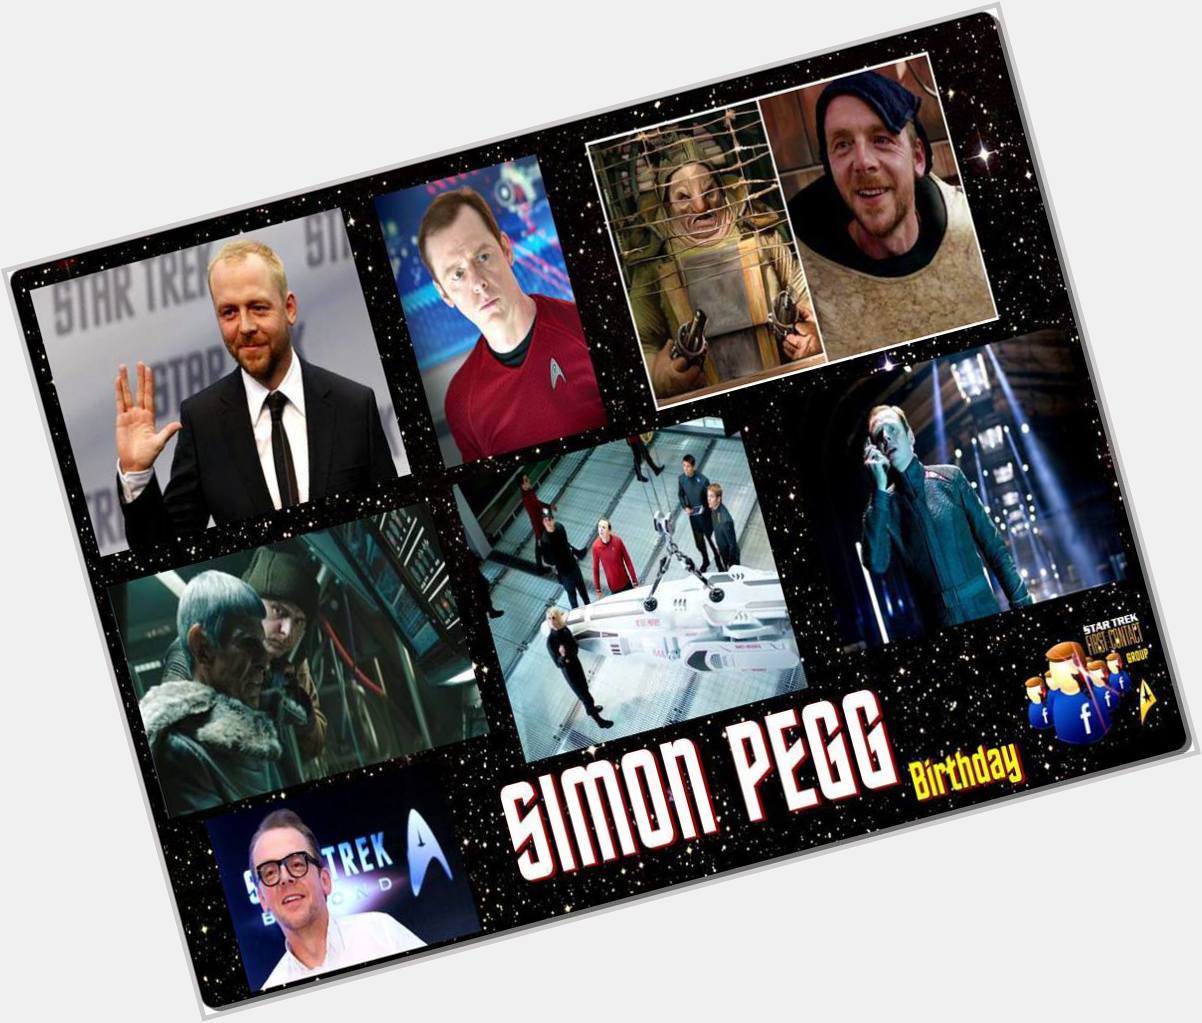 2-14 Happy birthday to Simon Pegg.  